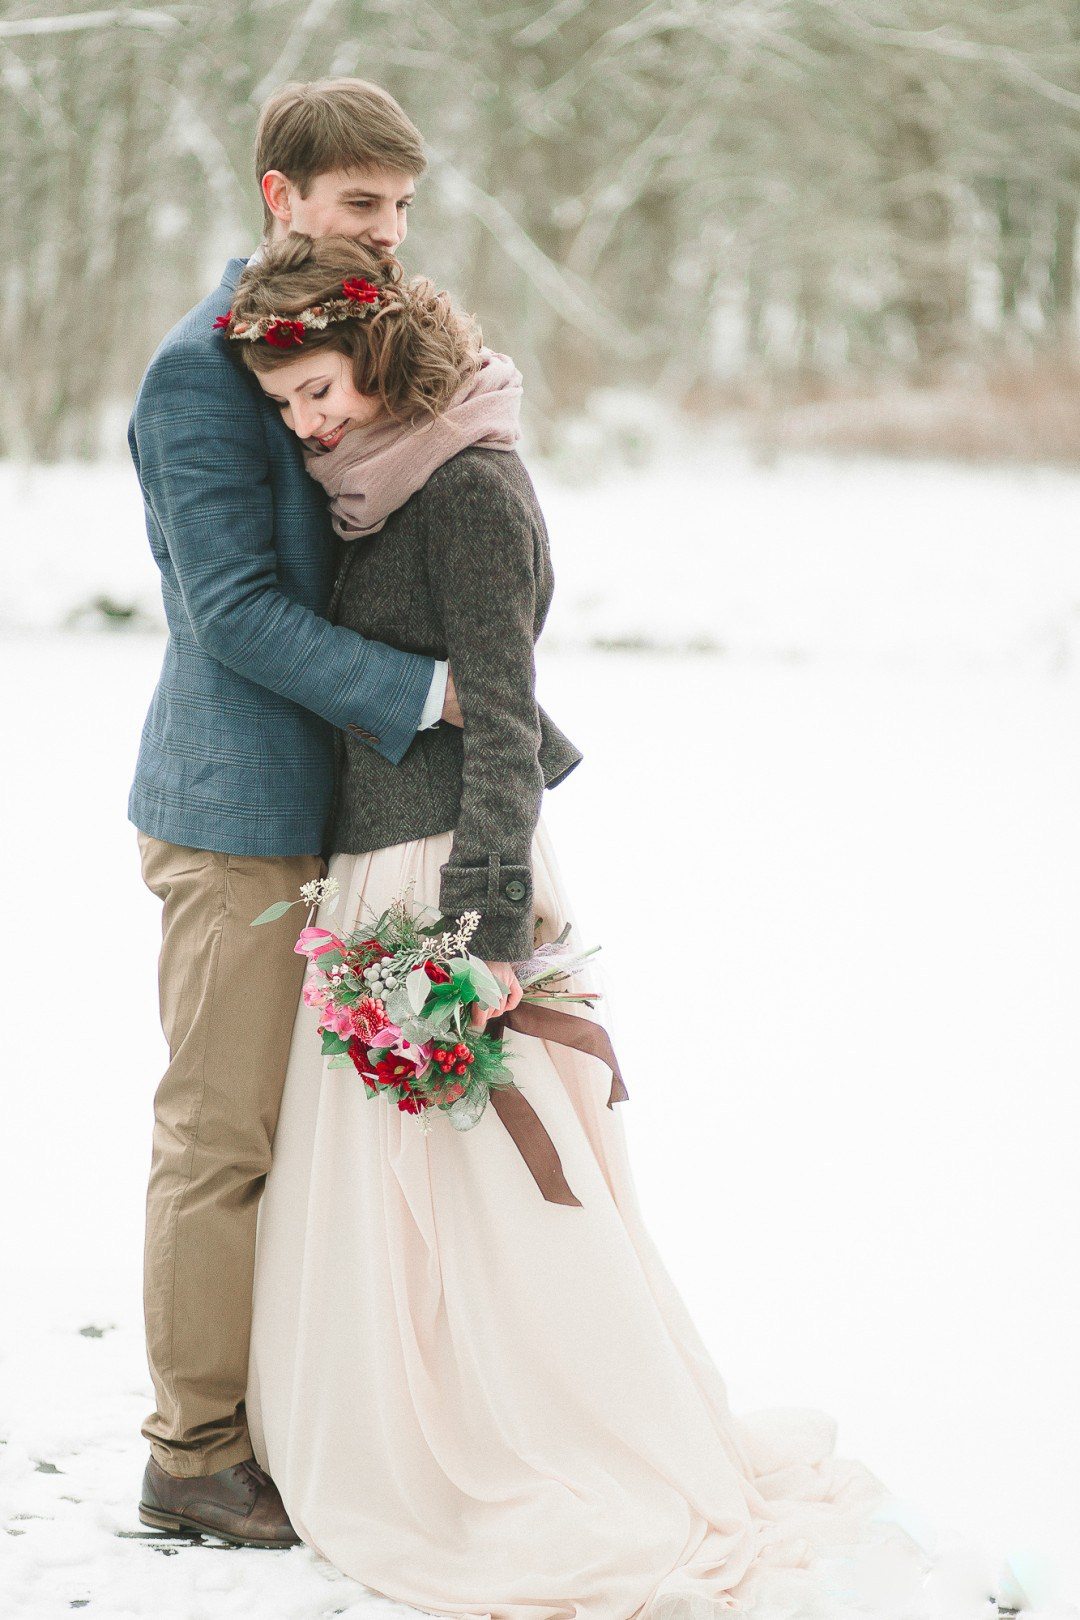 Зимняя свадьба: наши рекомендации